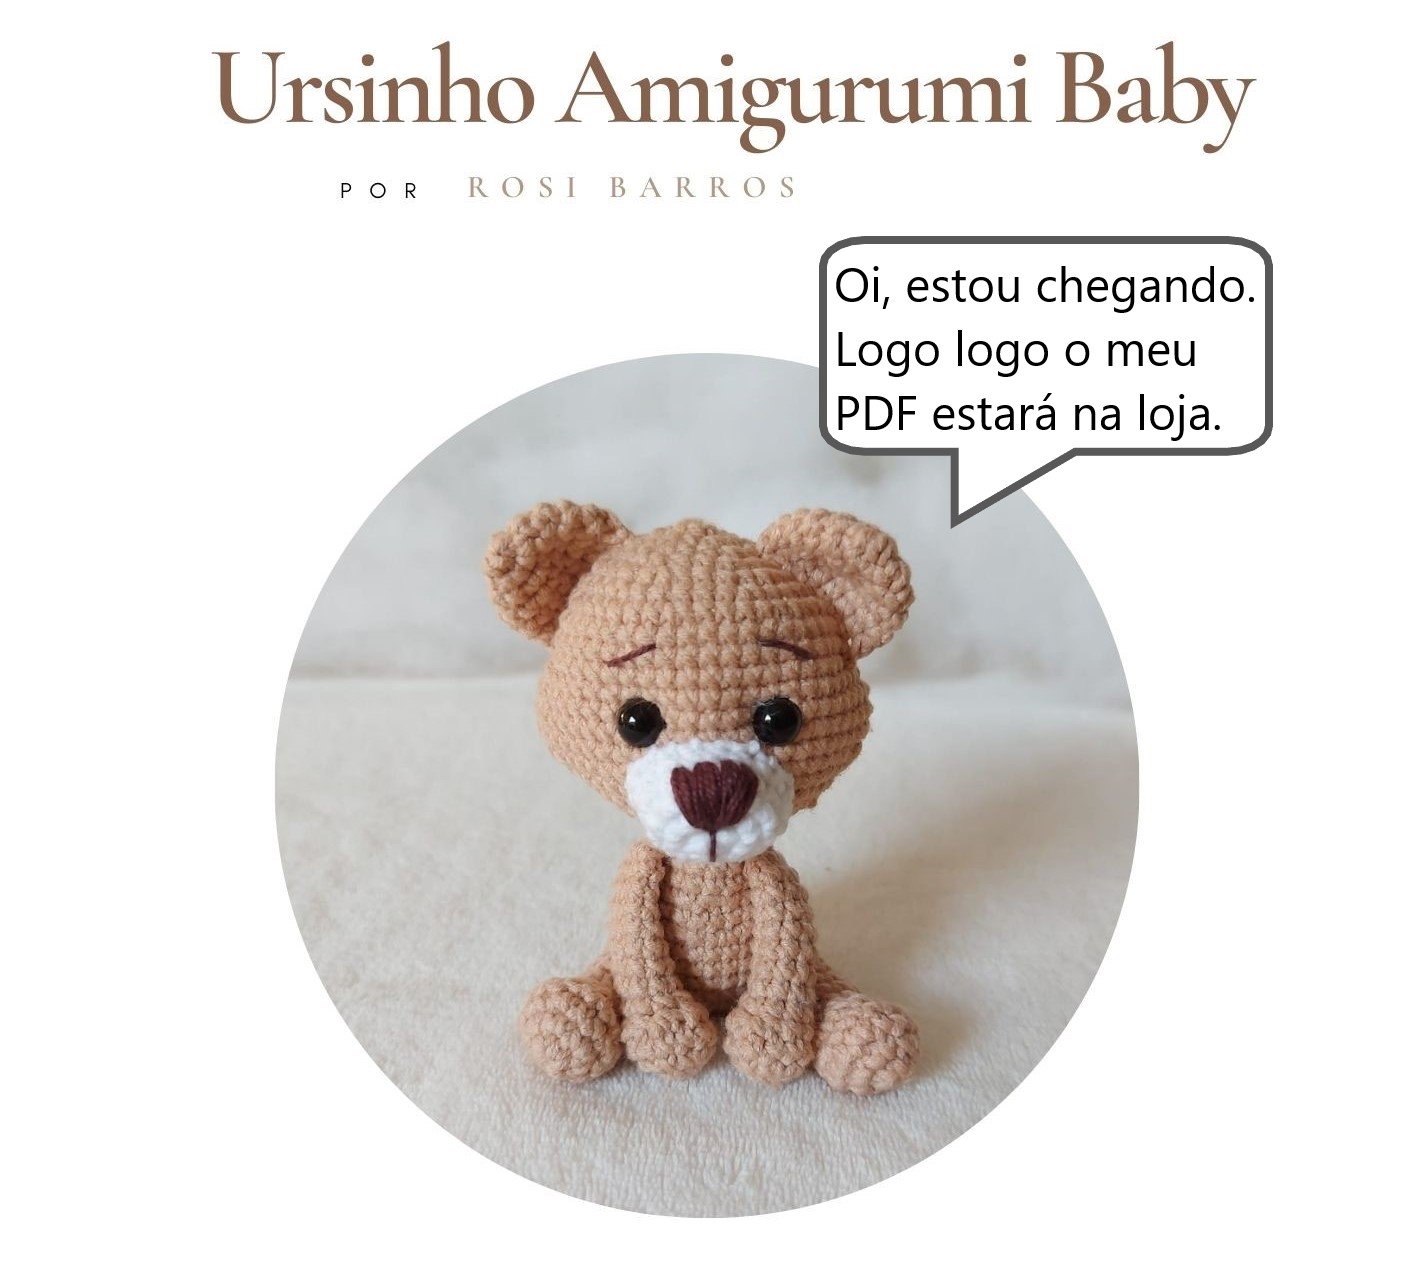 Ursinho Amigurumi Baby